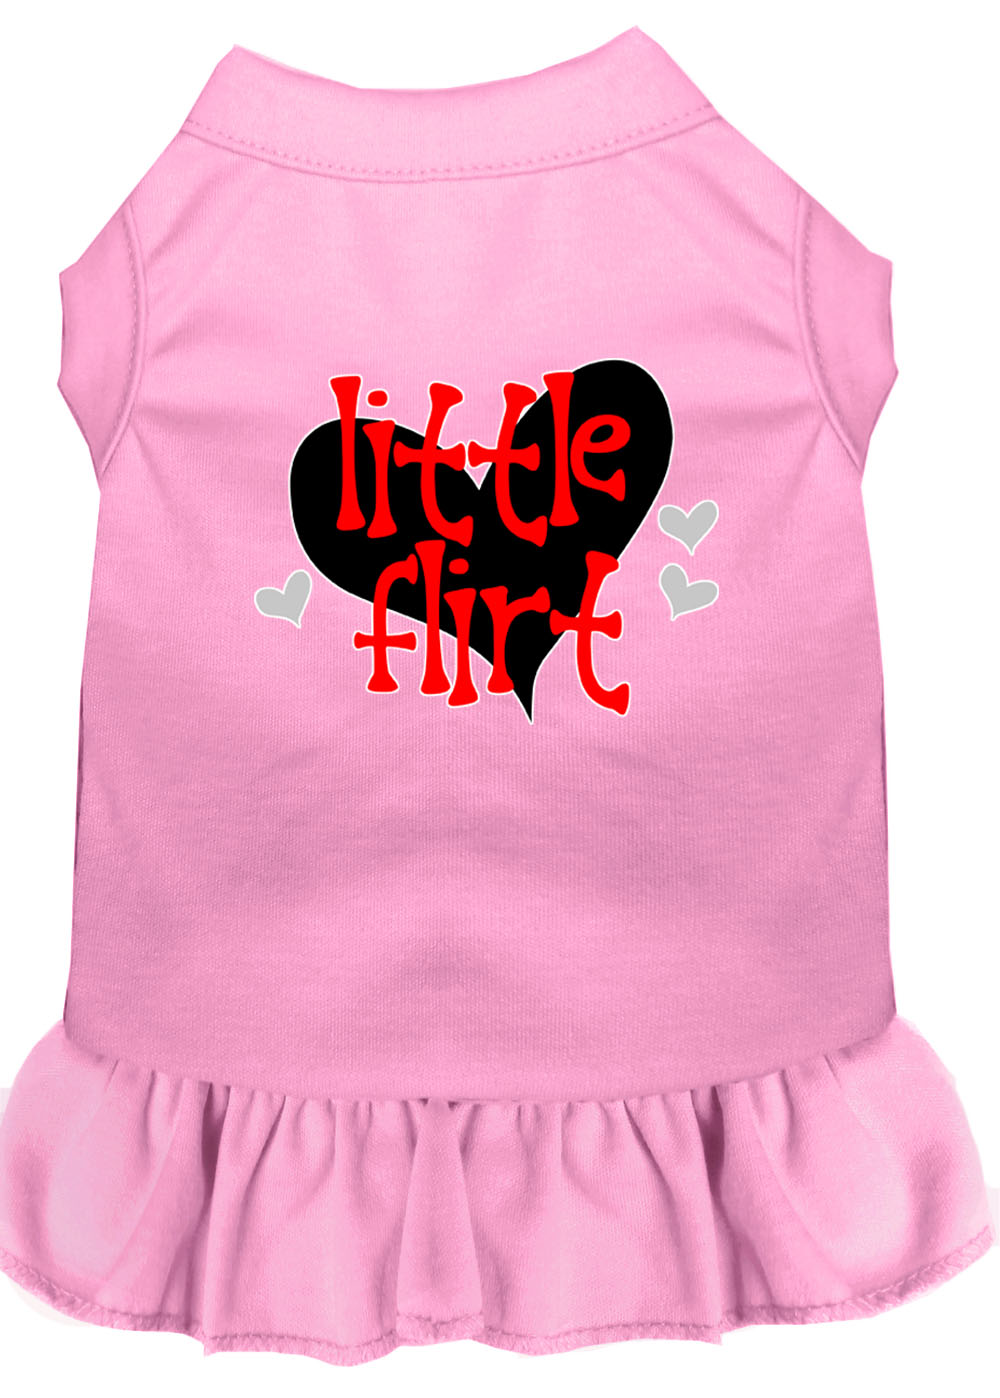 Little Flirt Screen Print Dog Dress Light Pink XXXL